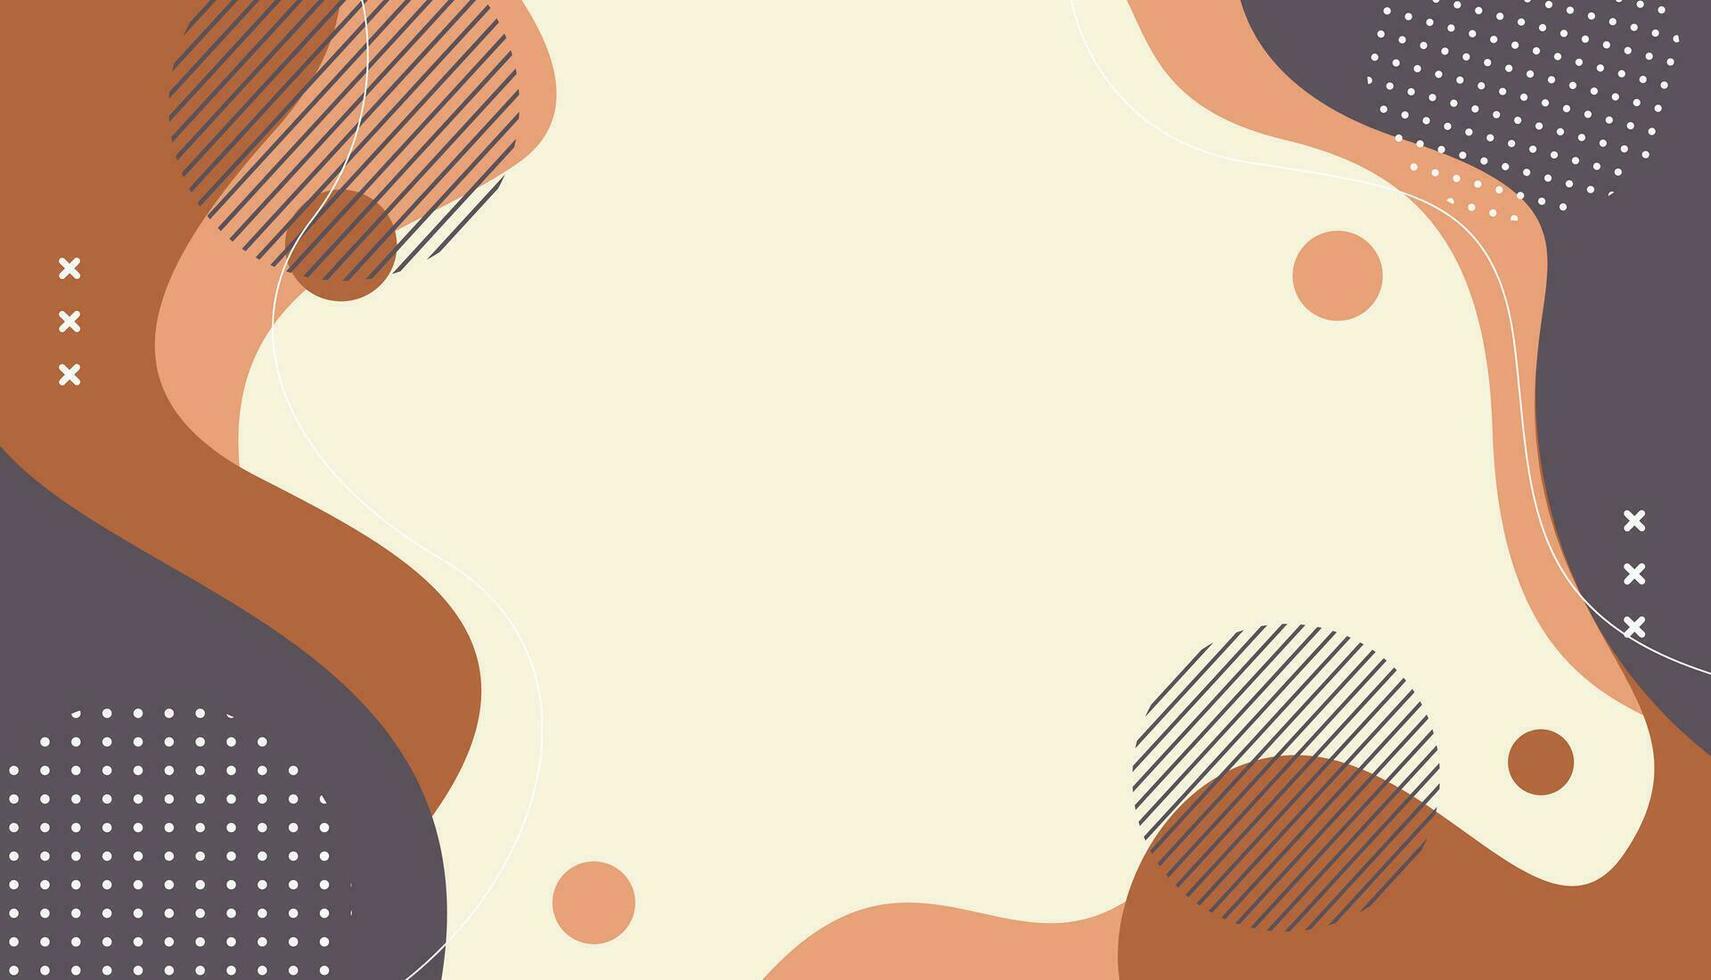 abstrakt bakgrund minimalistisk, hand dragen med geometrisk och organisk former i annorlunda nyanser av brun. enkel trendig platt vektor illustration, fri vektor fri vektor